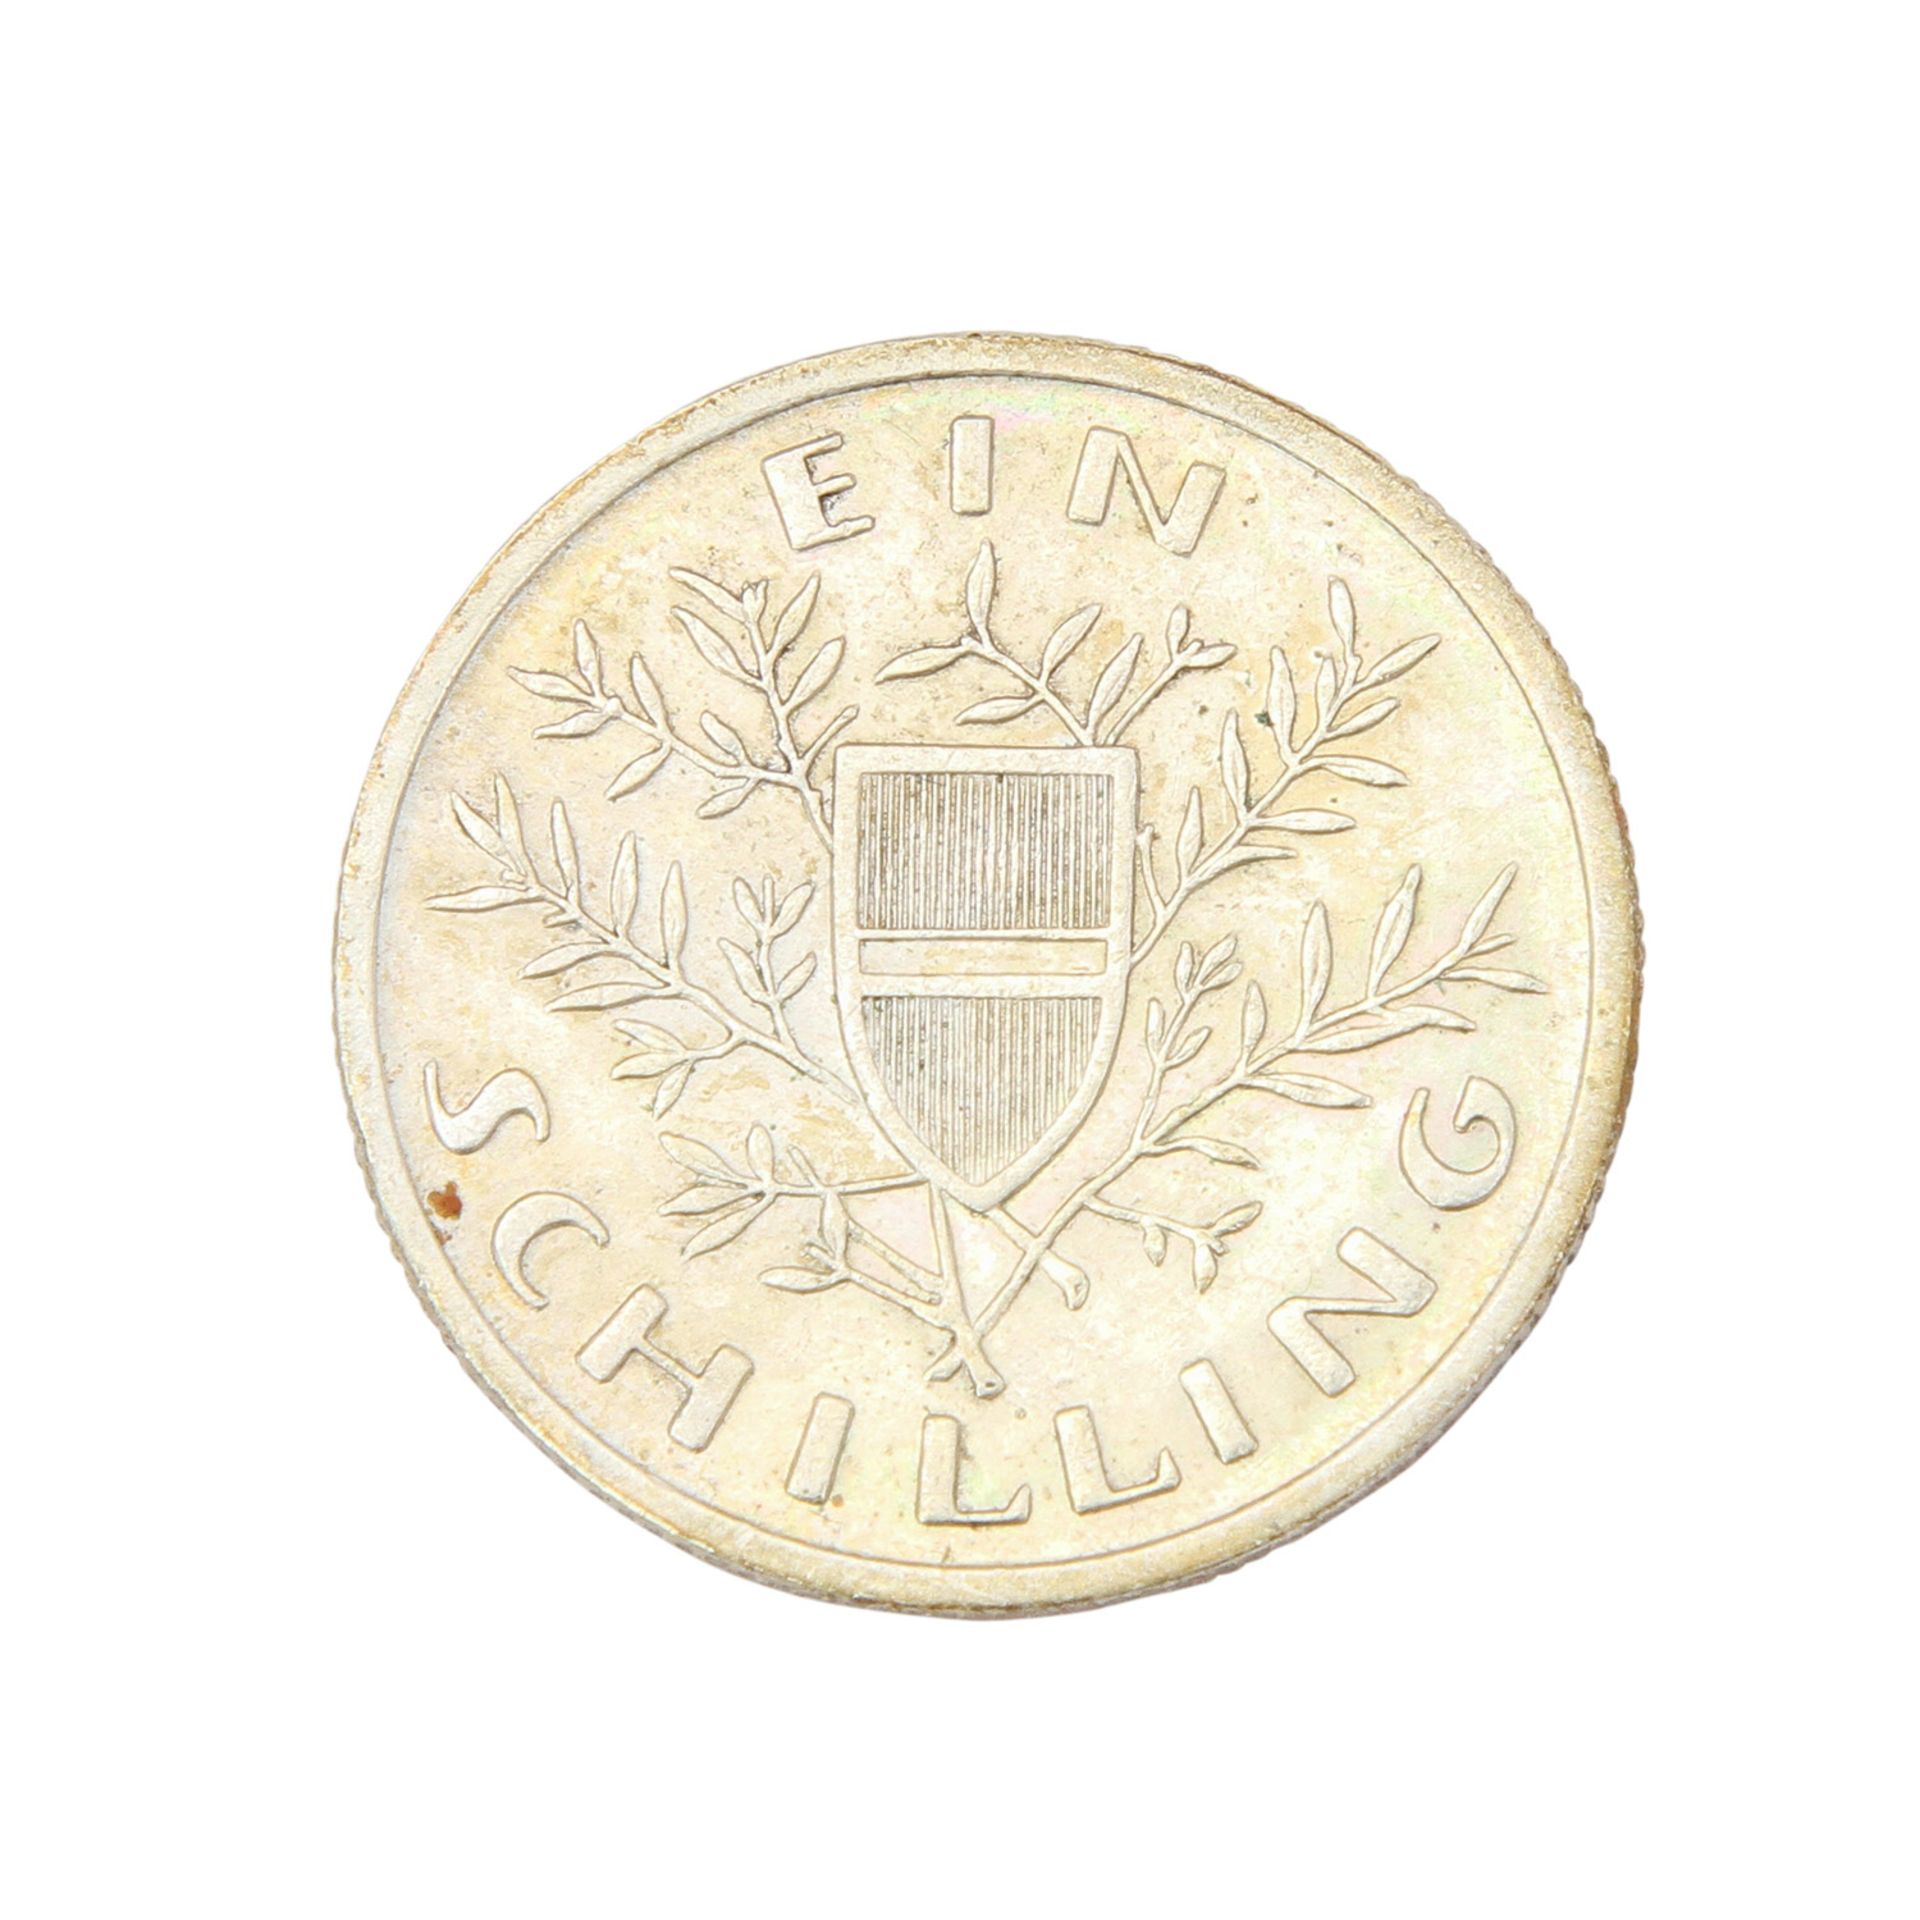 Österreich - 10 x 2 Schilling 1928-1937 vollst., dazu 1 Schilling Alpendollar 1925. Auf Tableau, - Bild 3 aus 4